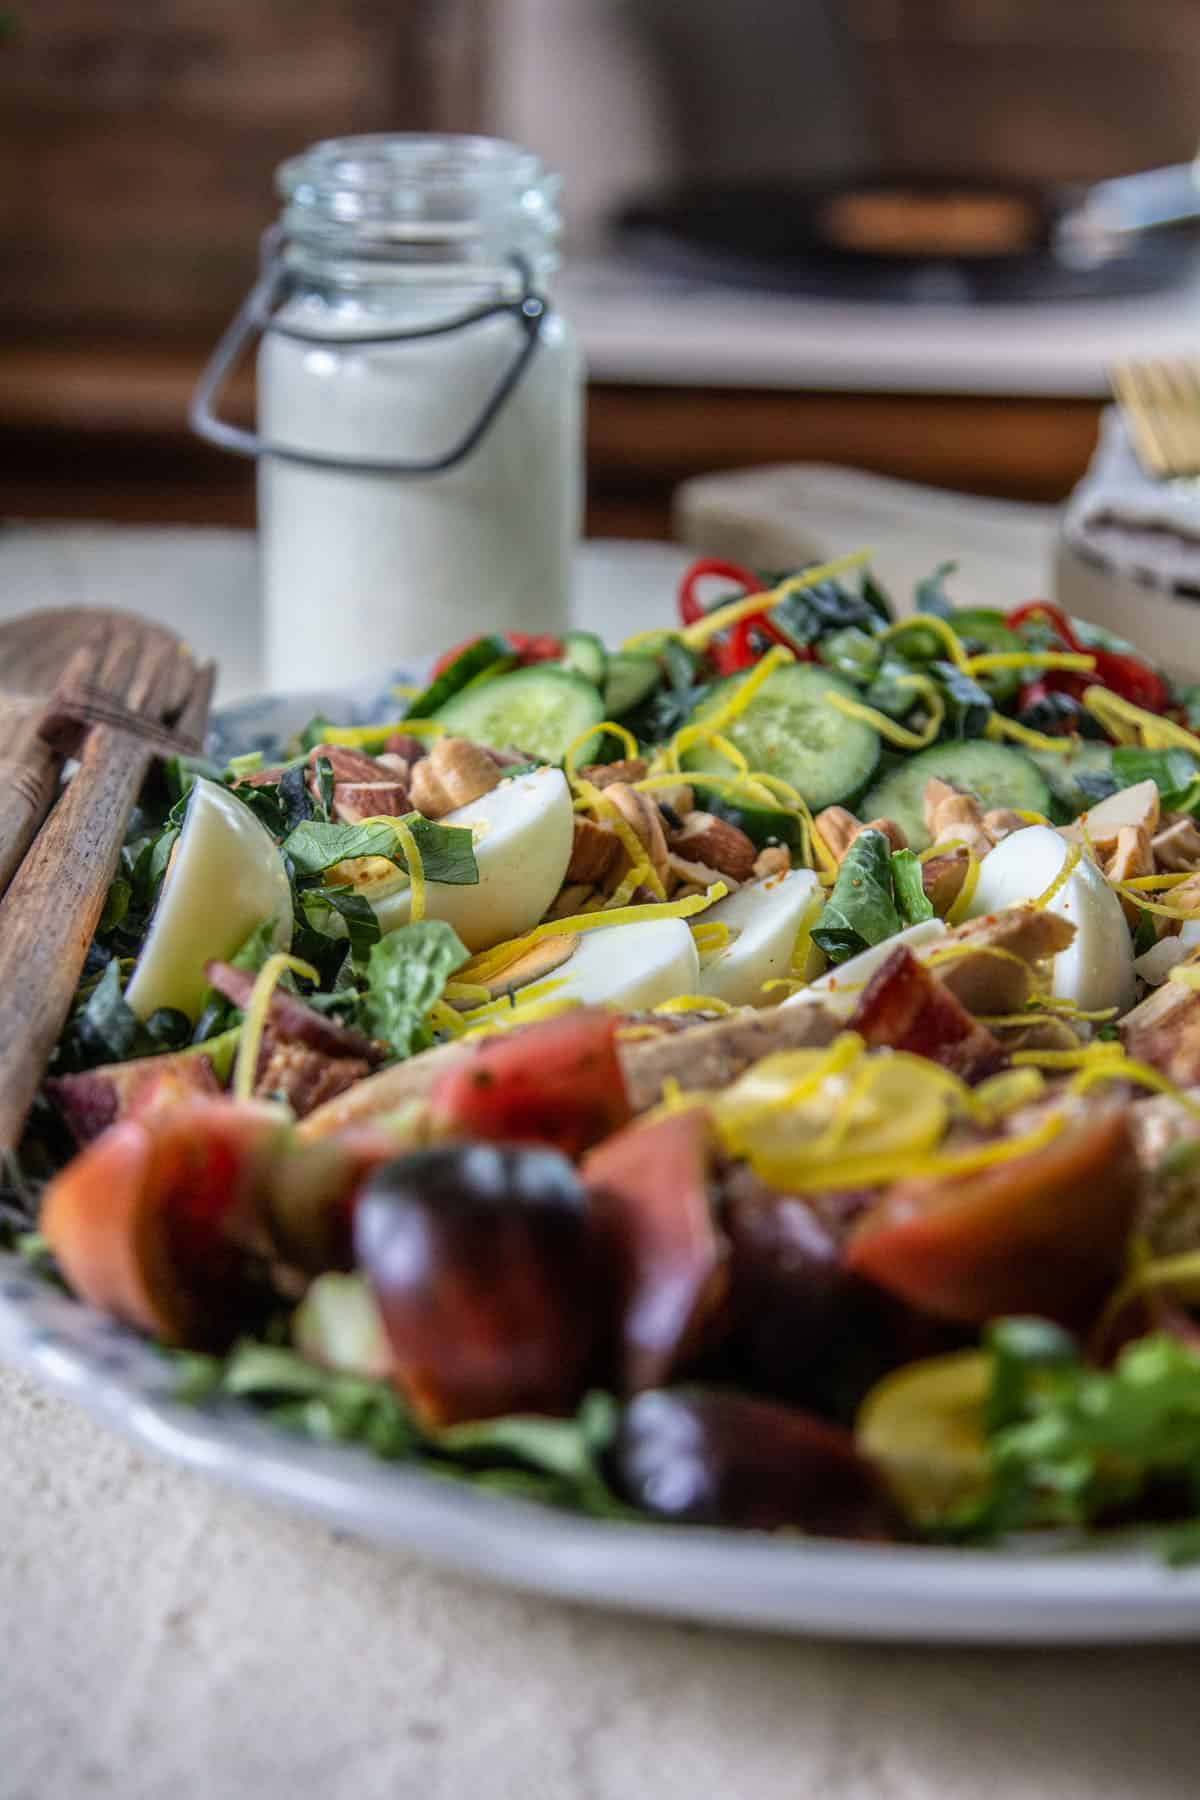 salad & salad dressing on light background